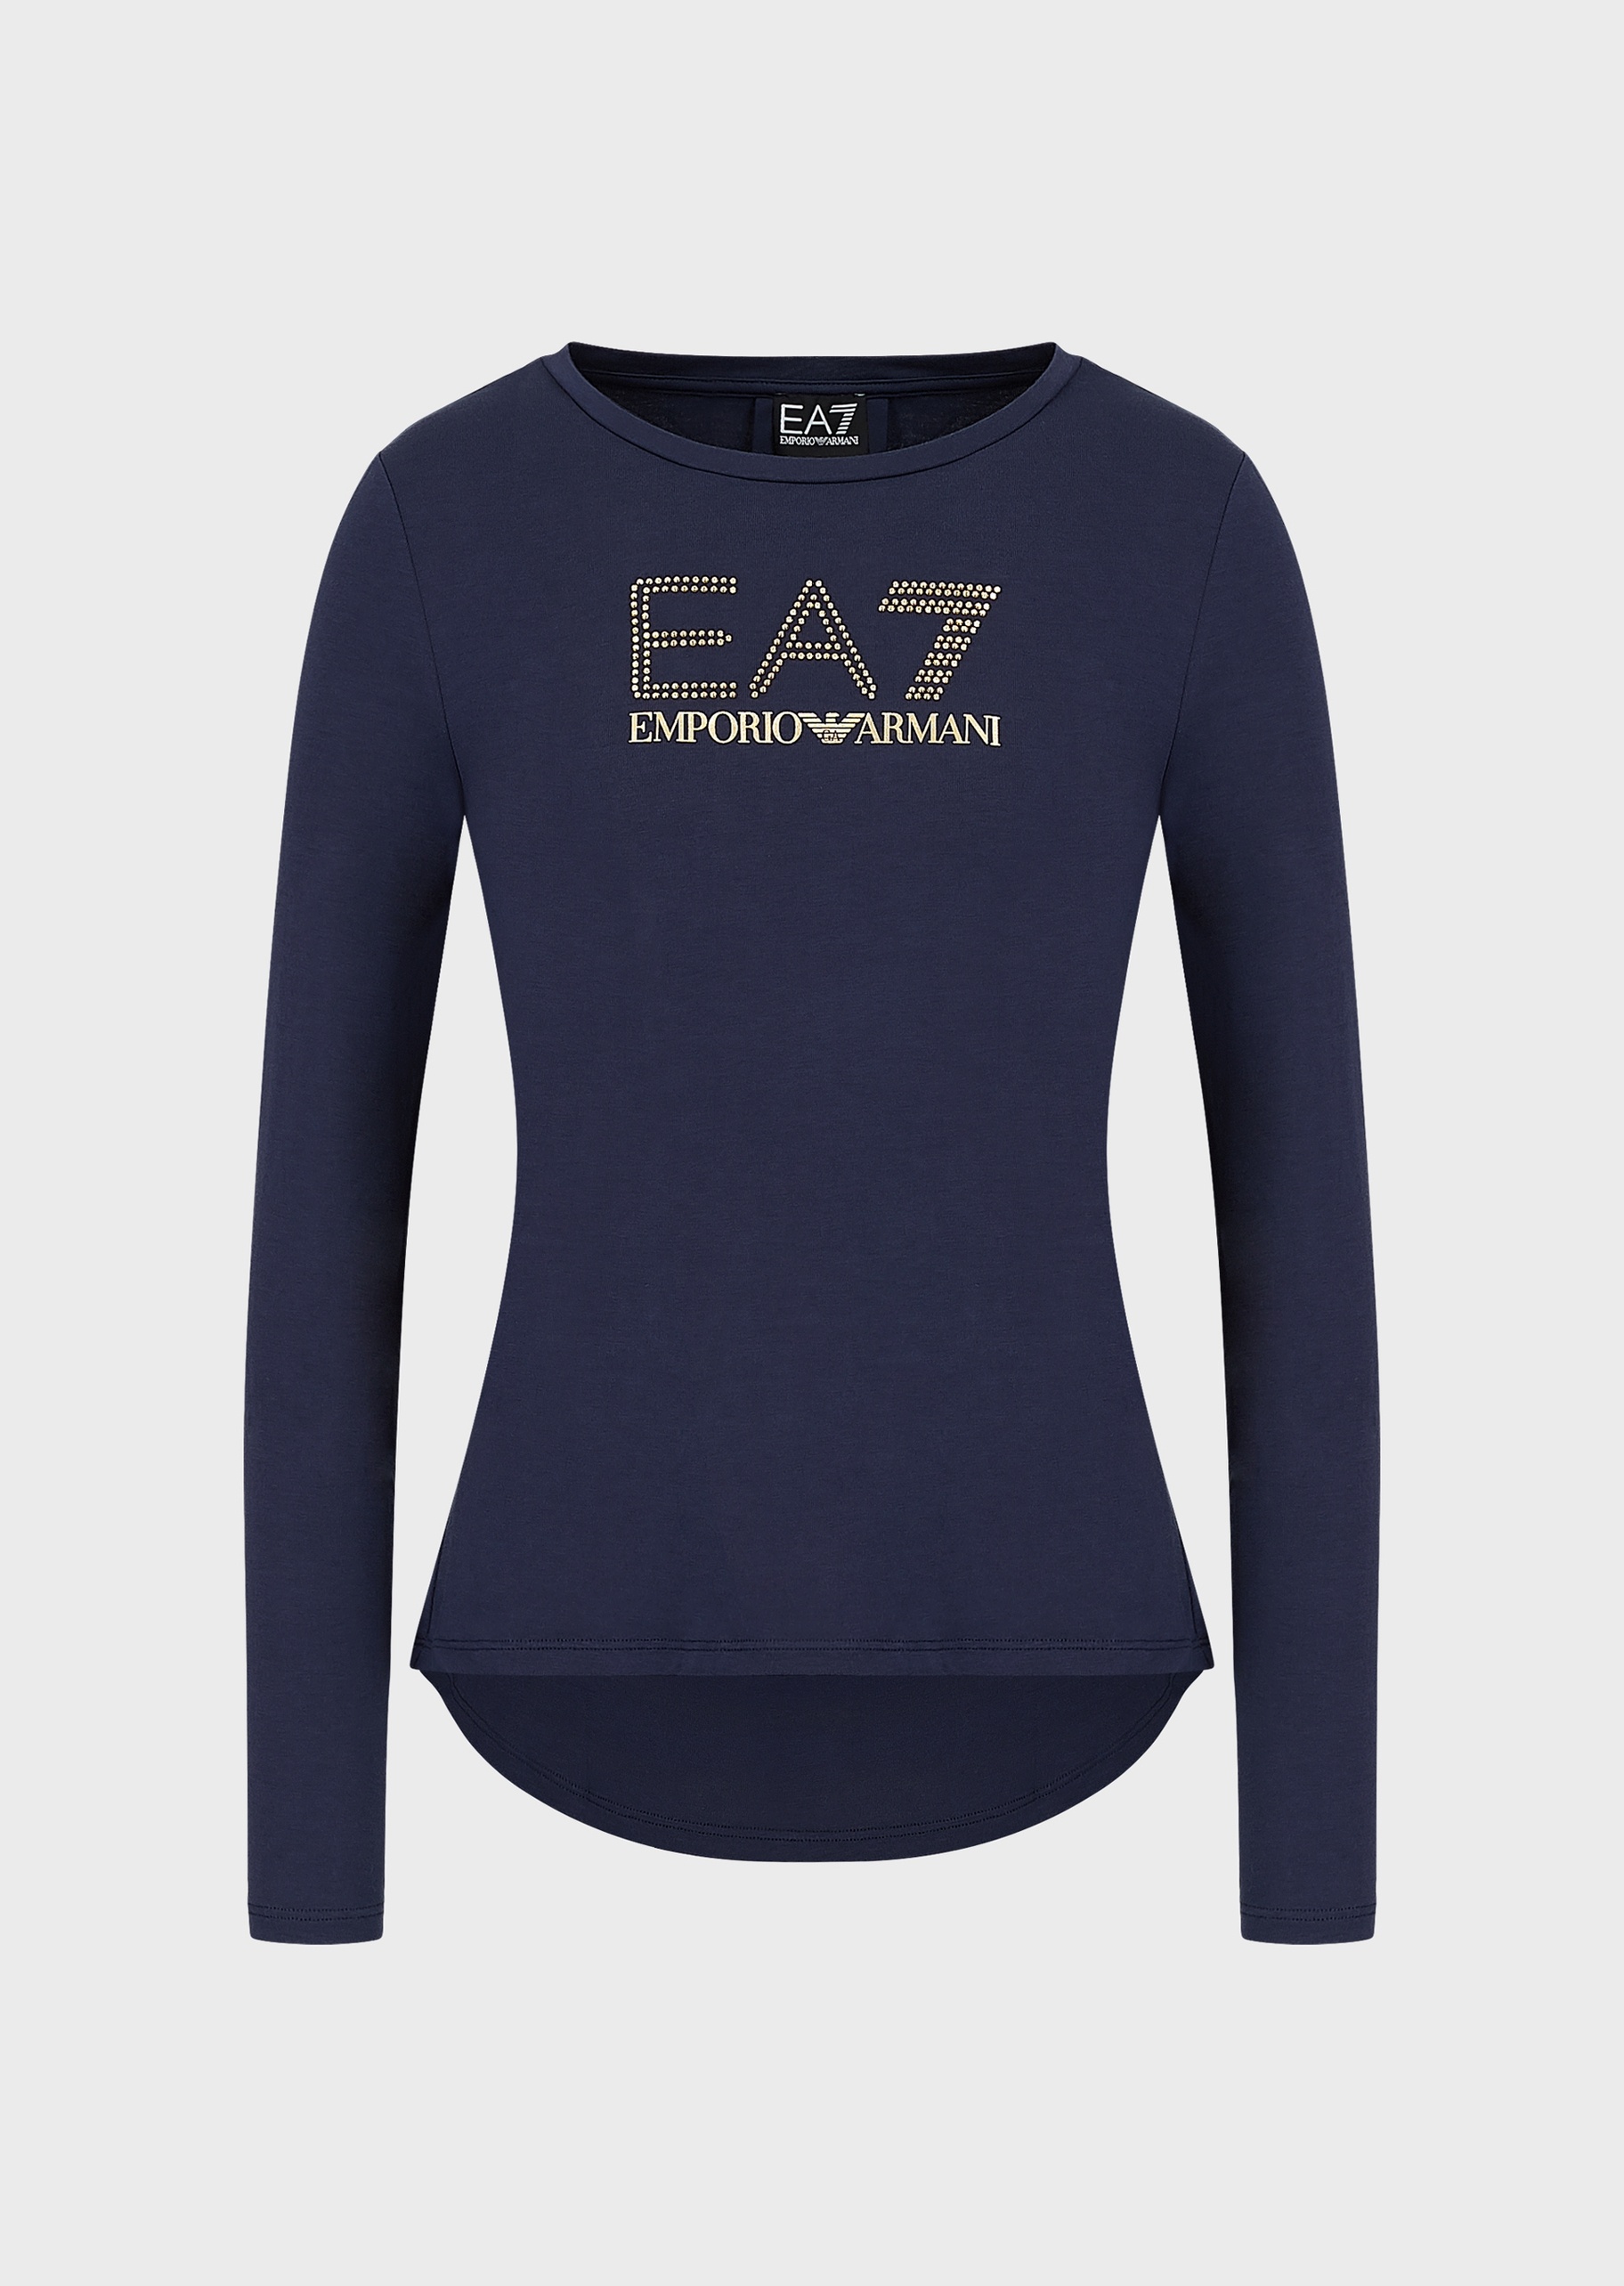 EA7 女士微弹修身长袖圆领健身训练休闲T恤